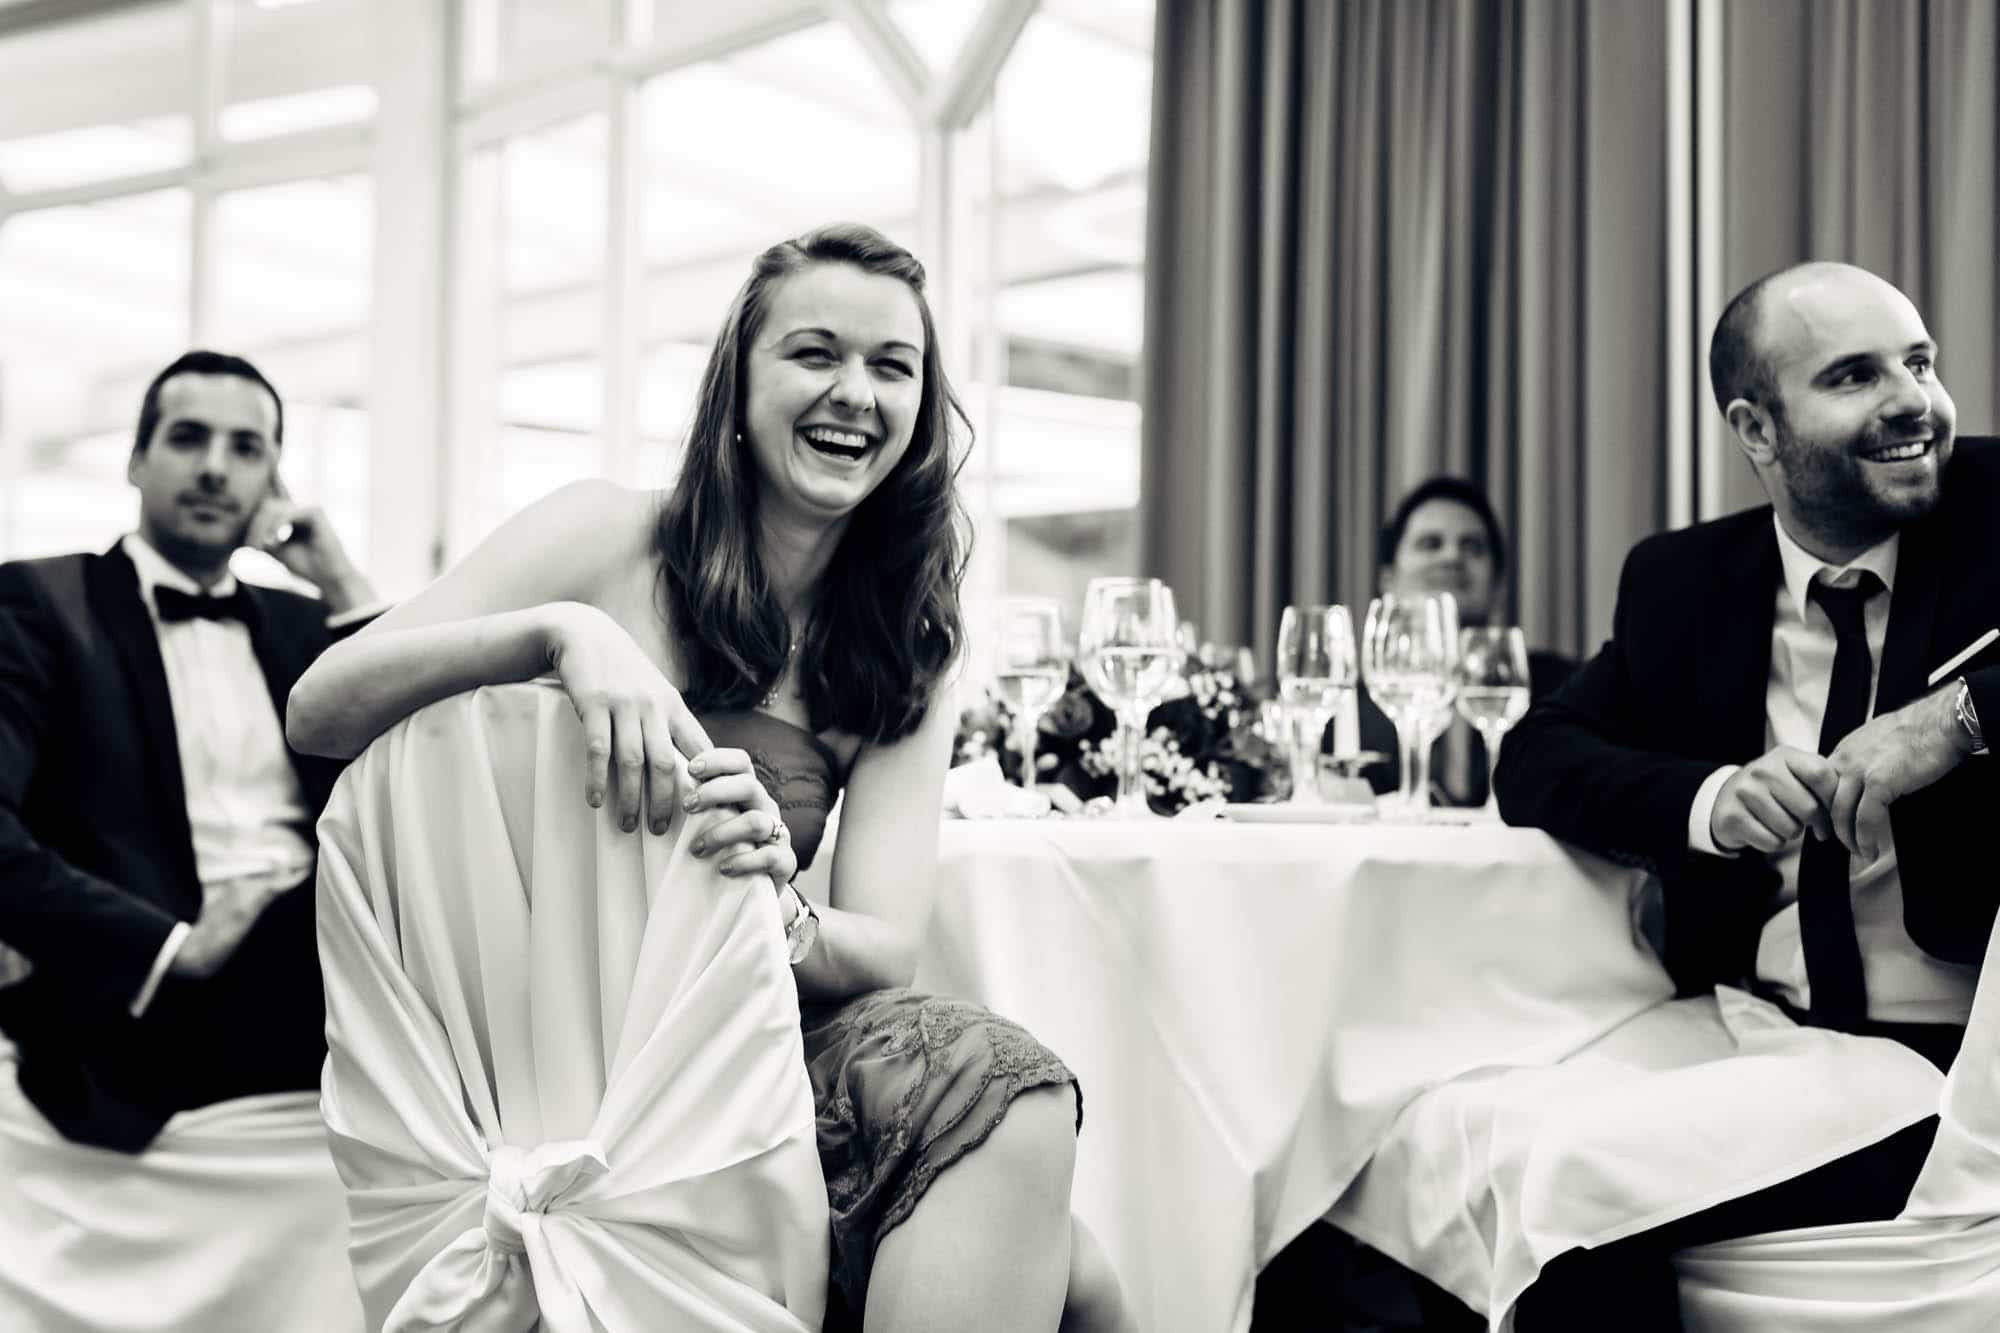 Hochzeitsfest von Fabienne und Mark im Seminarhotel Ägeri vom 19. September 2015.